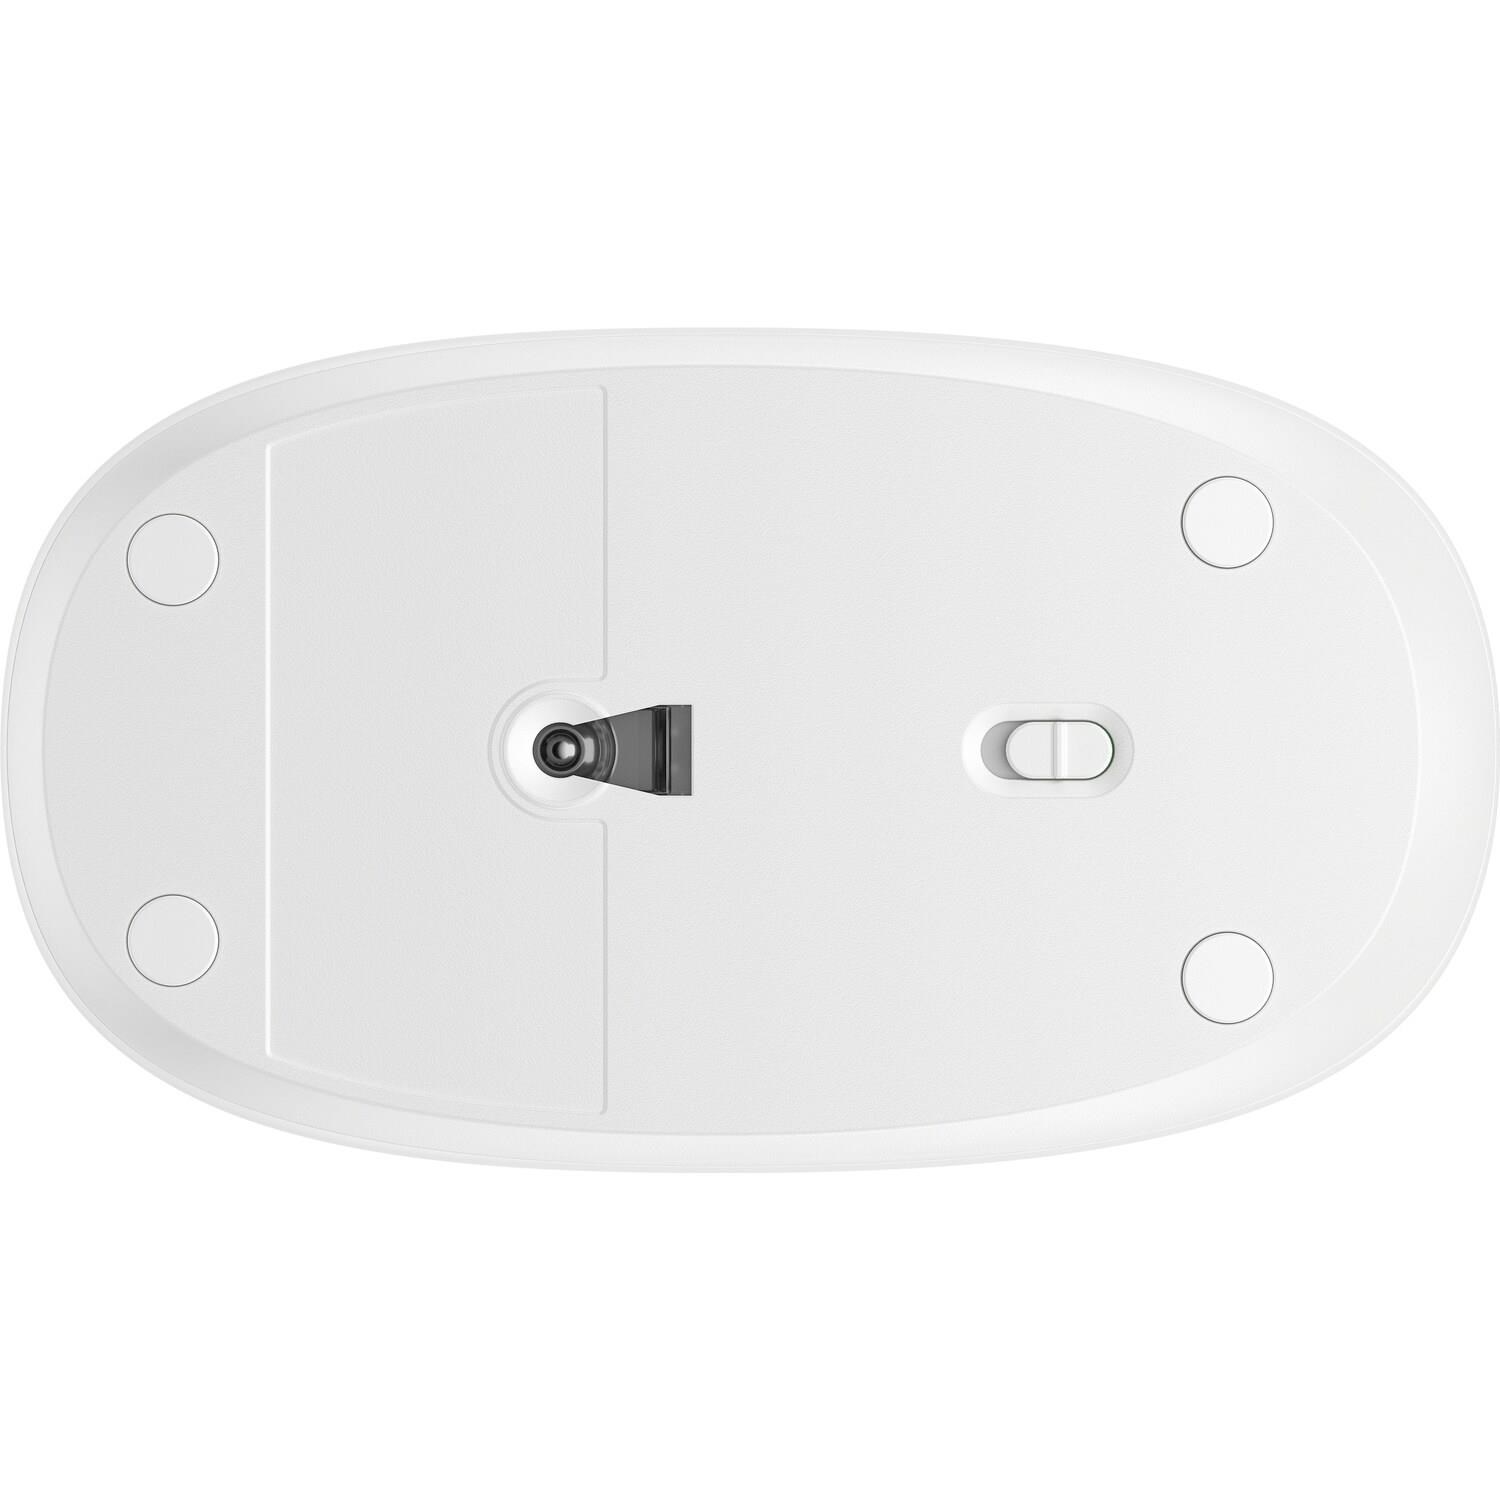 BAZAR - HP 240 Bluetooth Mouse White EURO - bezdrátová bluetooth myš - Poškozený obal (Komplet)3 